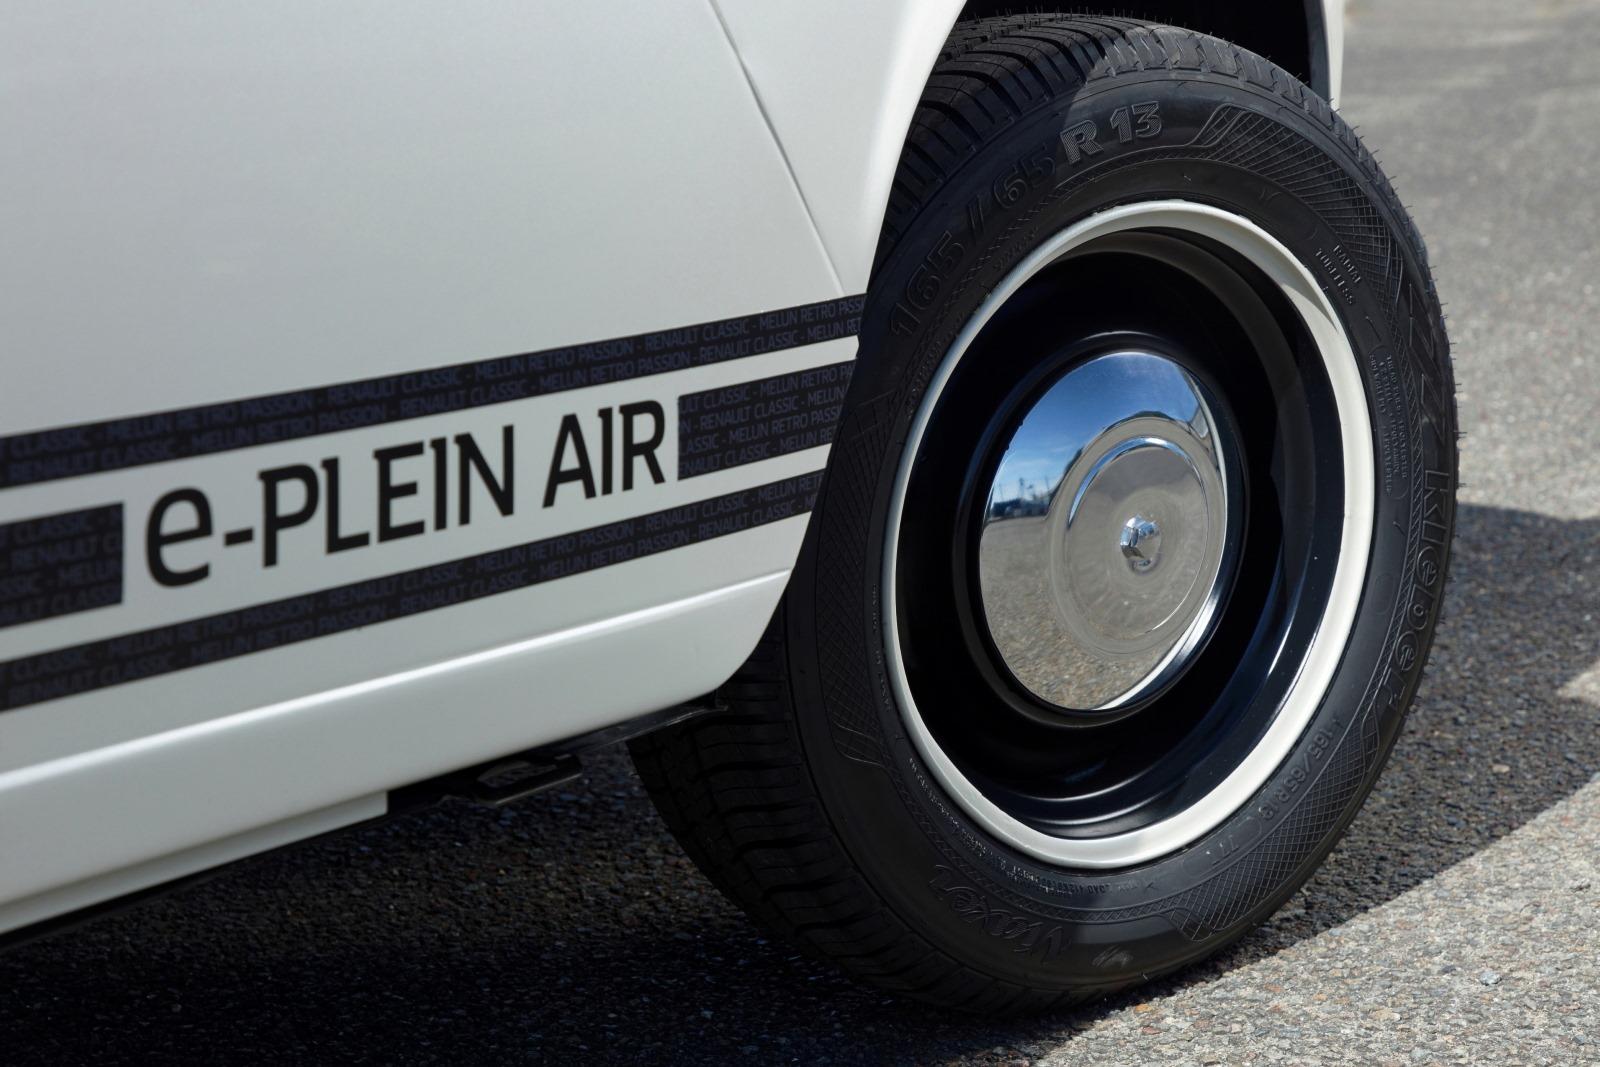 Renault e-Plein Air (2)